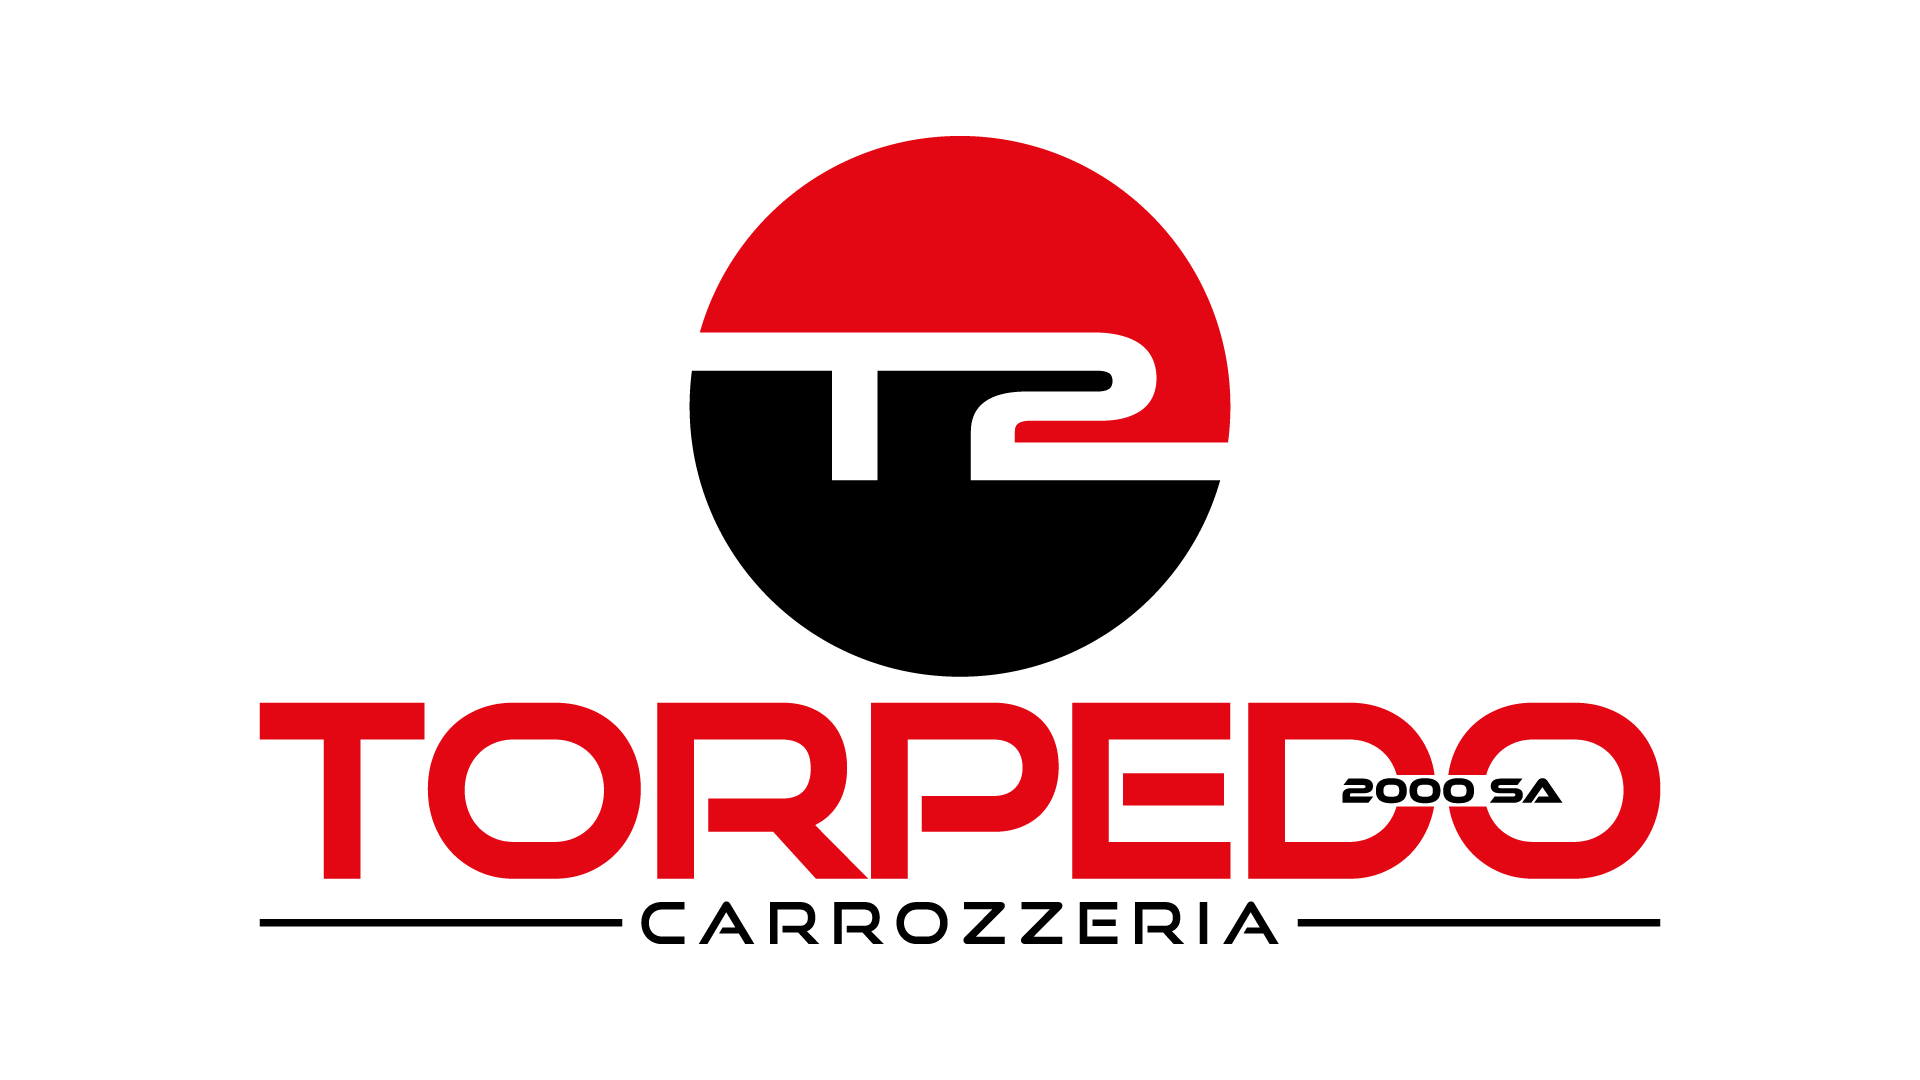 Torpedo 2000